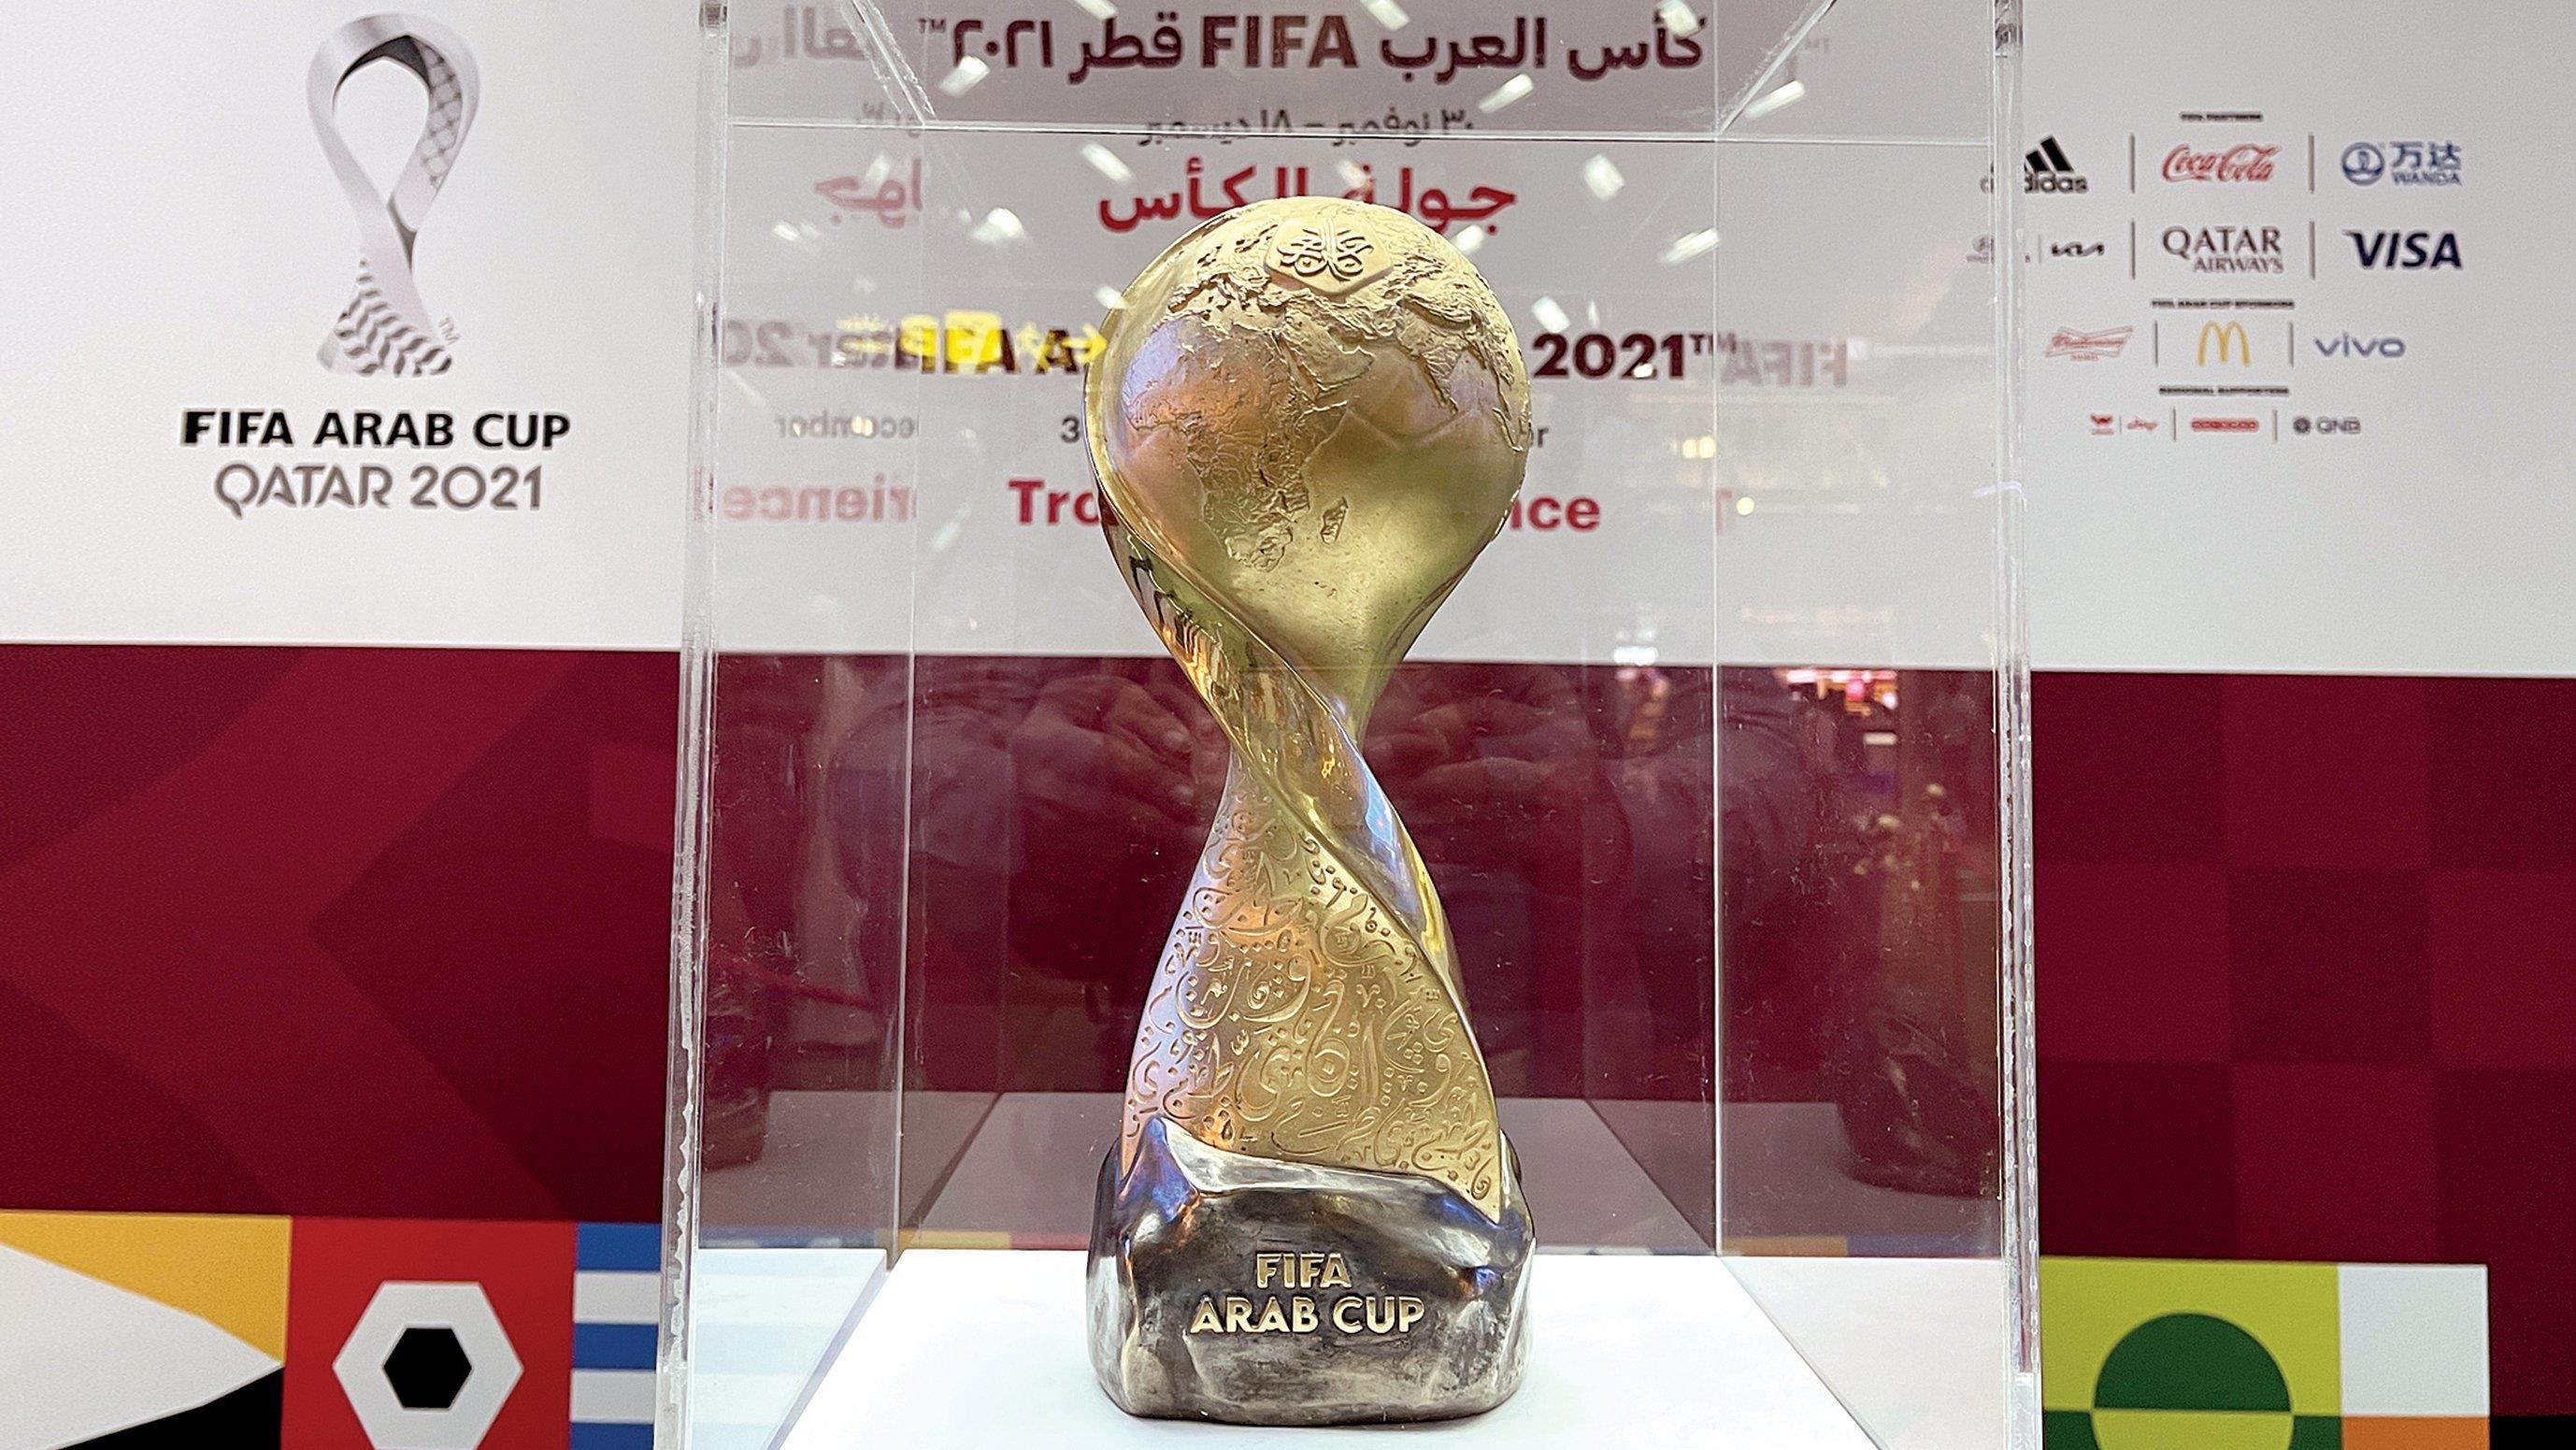 الدوحة .. مجسم " كأس مونديال العرب " يبرز خريطة العالم العربي وثقافته ودلالاتها